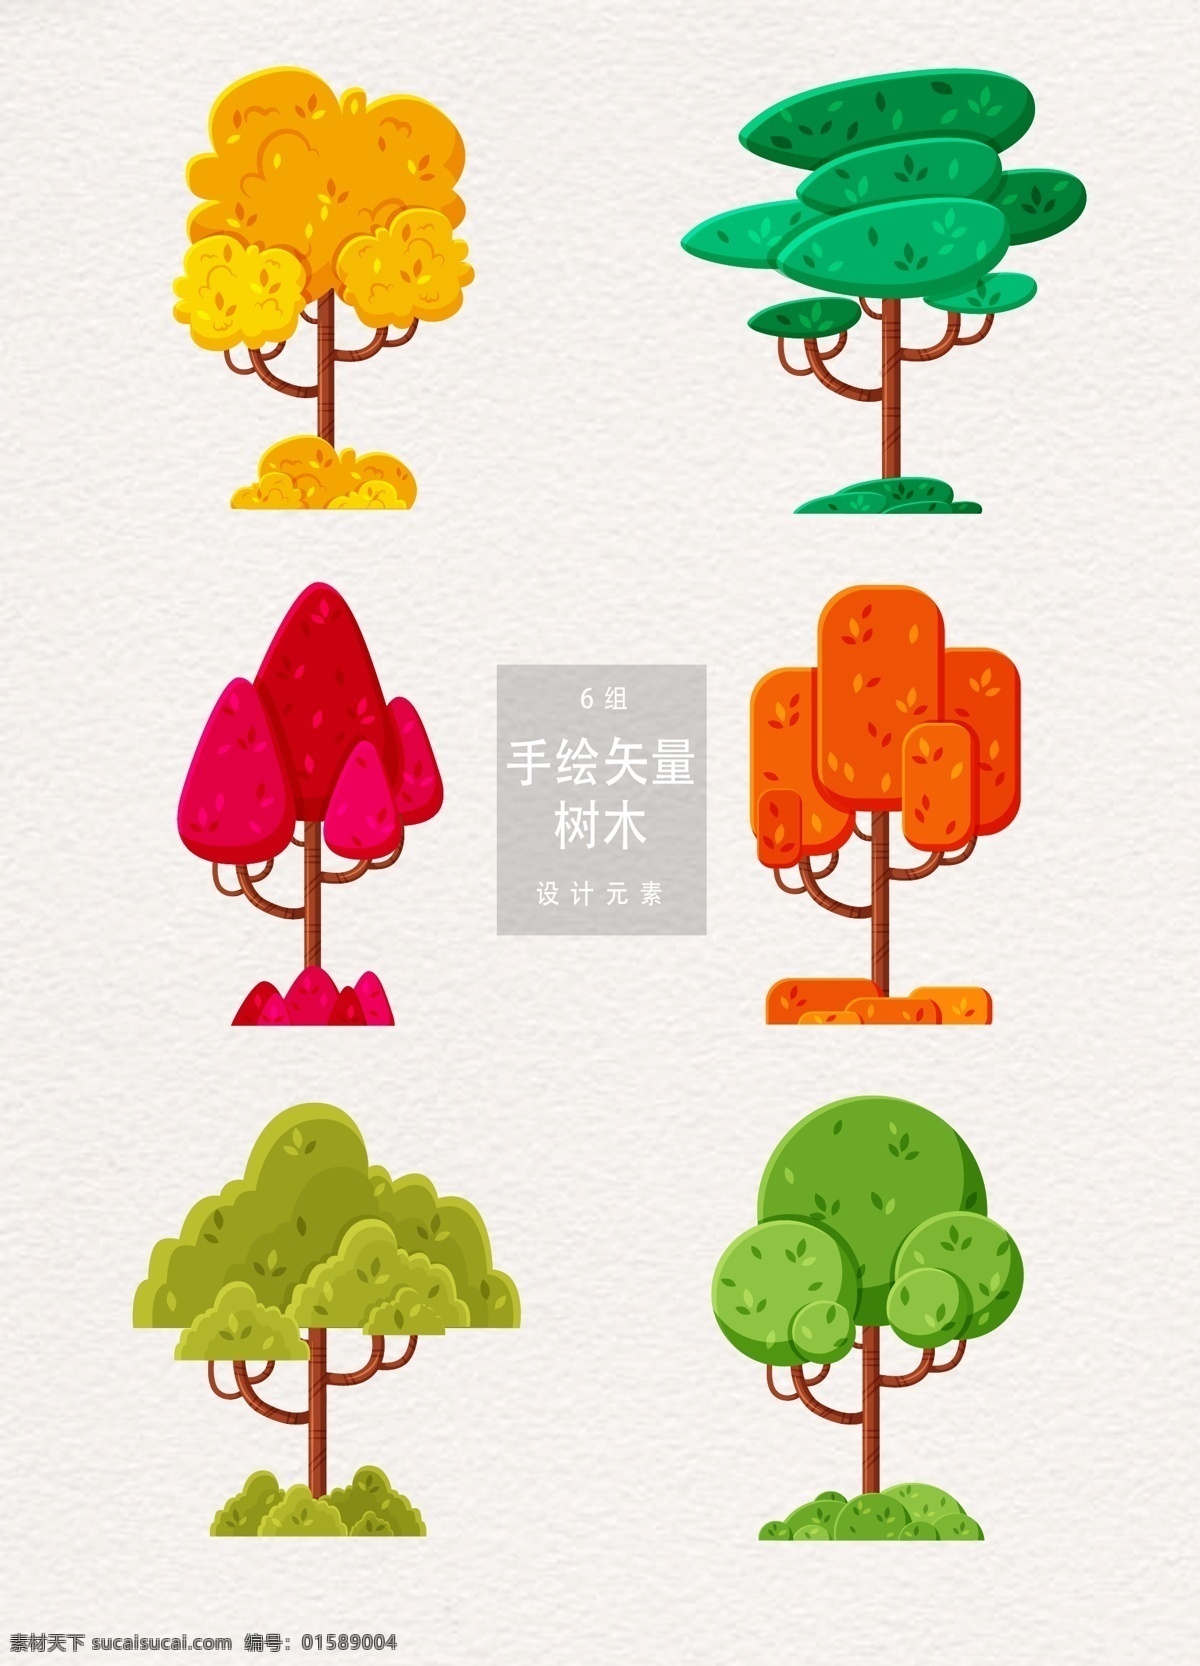 矢量 创意 抽象 树木 元素 夏季 绿树 立夏 夏天 ai素材 树 手绘树木 抽象树木